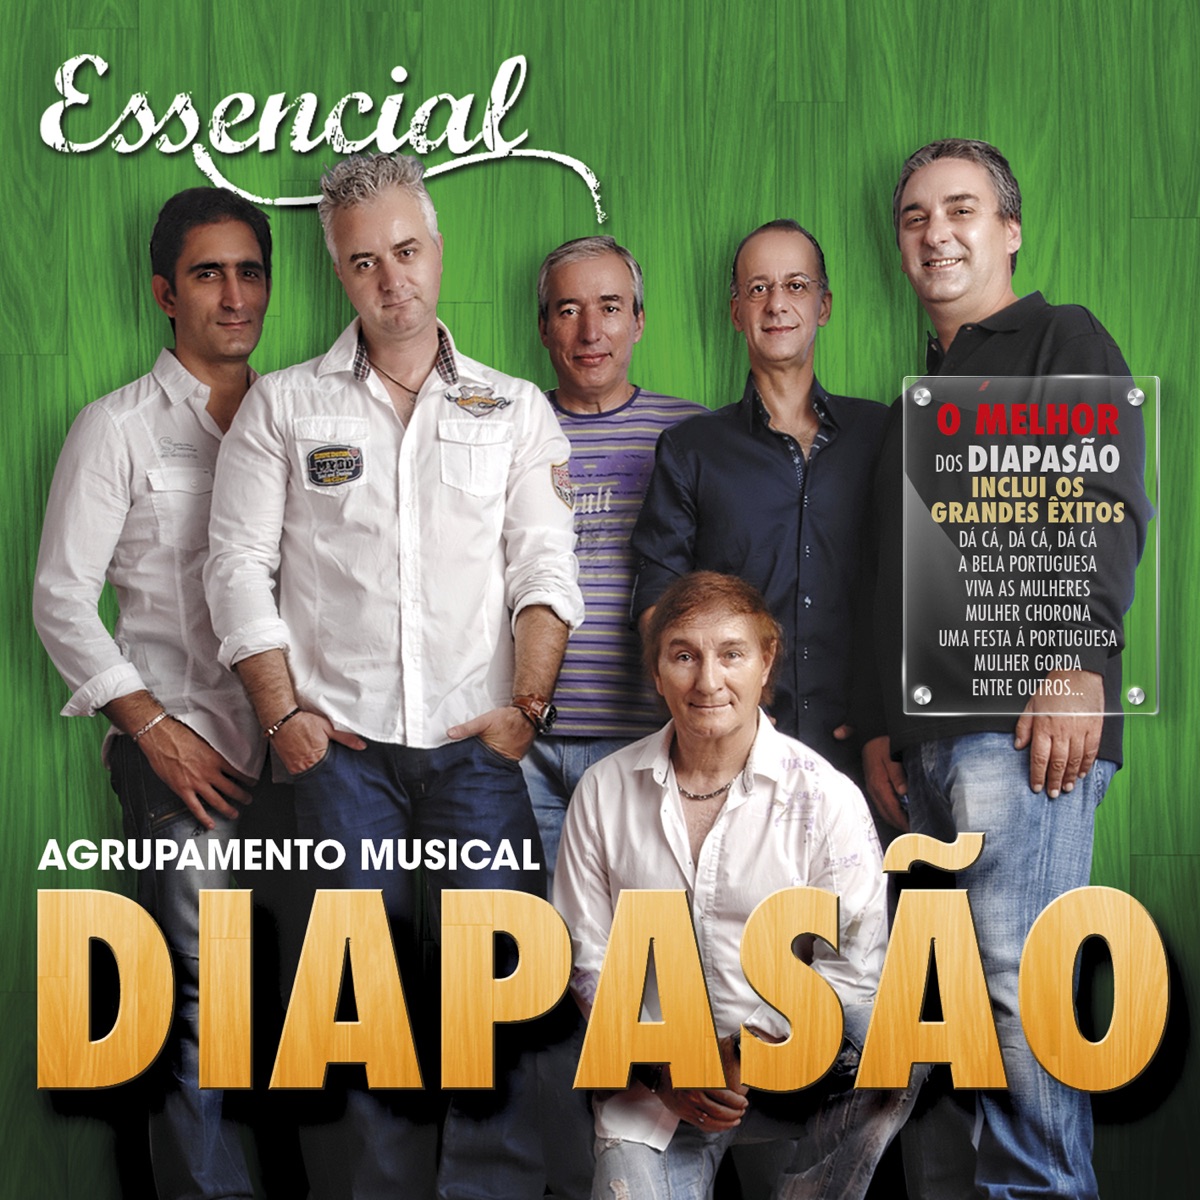 Diapasão Mix 3 - Album by Agrupamento Musical Diapasão - Apple Music